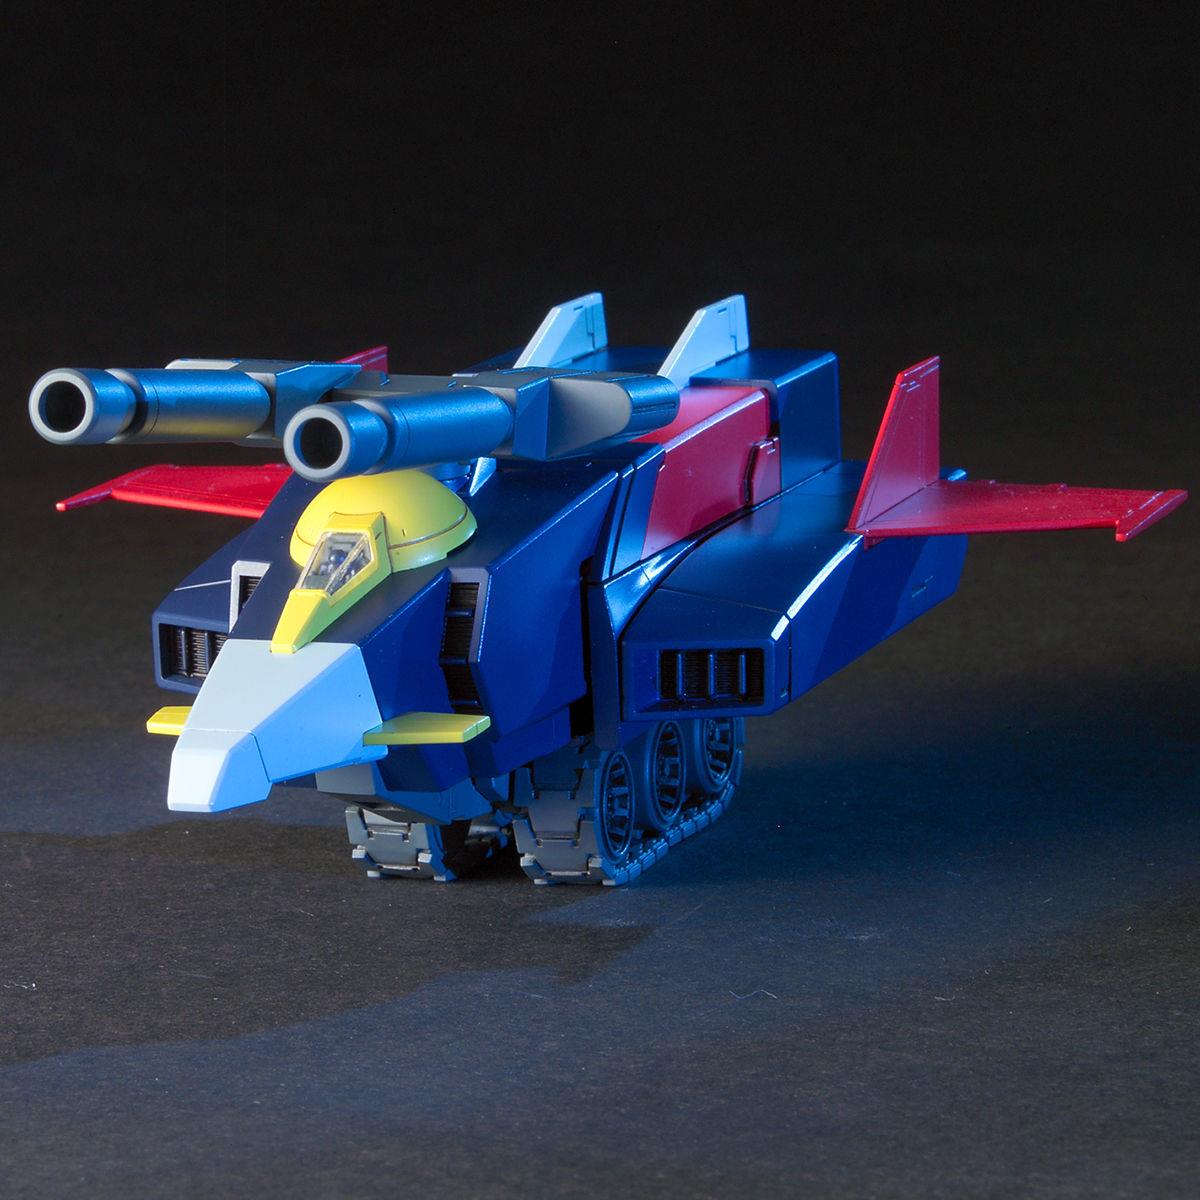 Gundam: G-Armor (G-Fighter + RX-78) HG Model